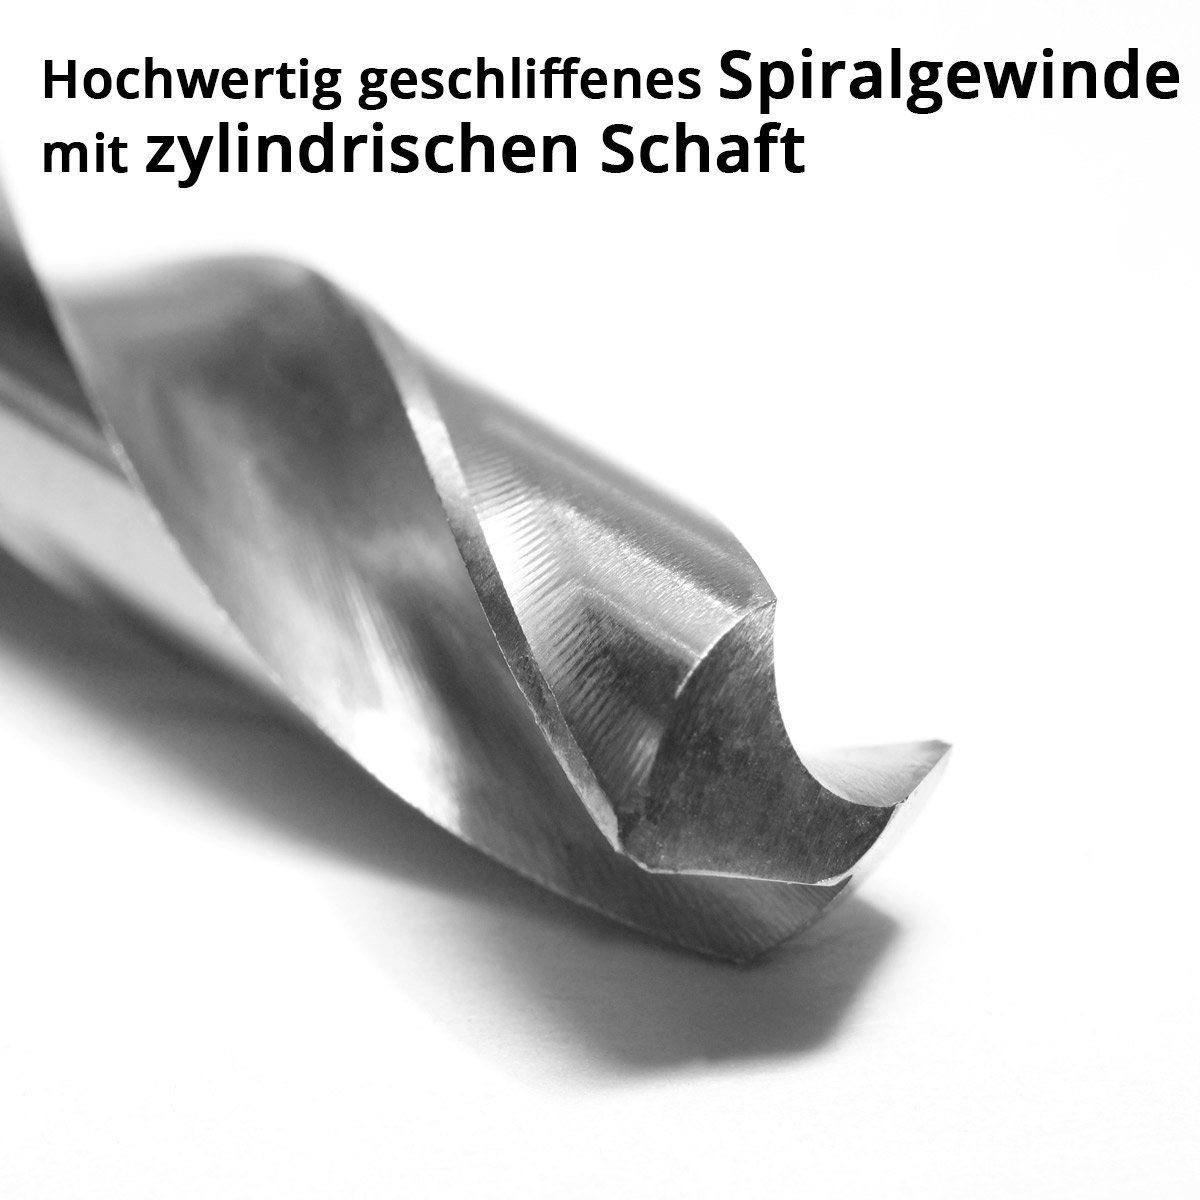 25-tlg) STAHLWERK Bohrersatz HSS Bohrer Mini mm, Teile Set (Set, 25 0,5-3,0